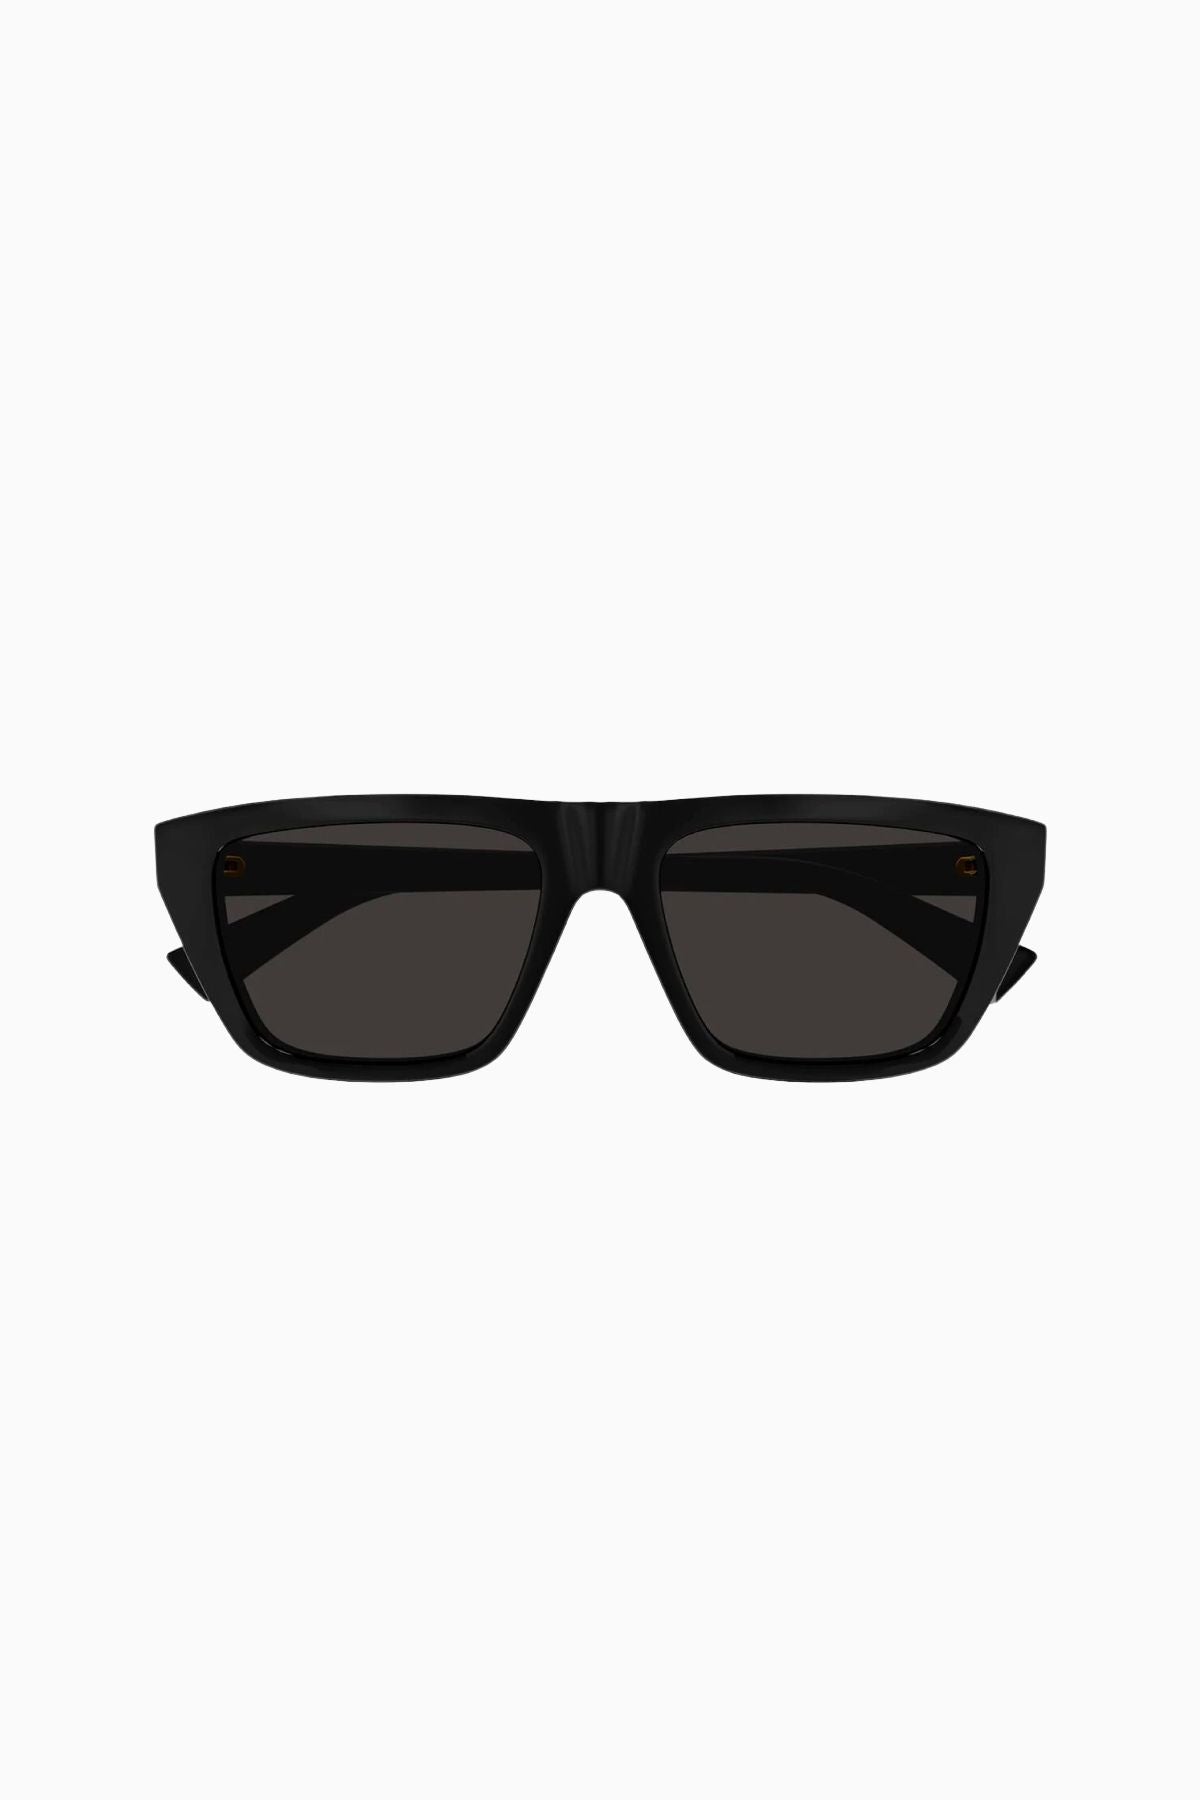 Bottega Veneta Sleek Square Framed Sunglasses - Black